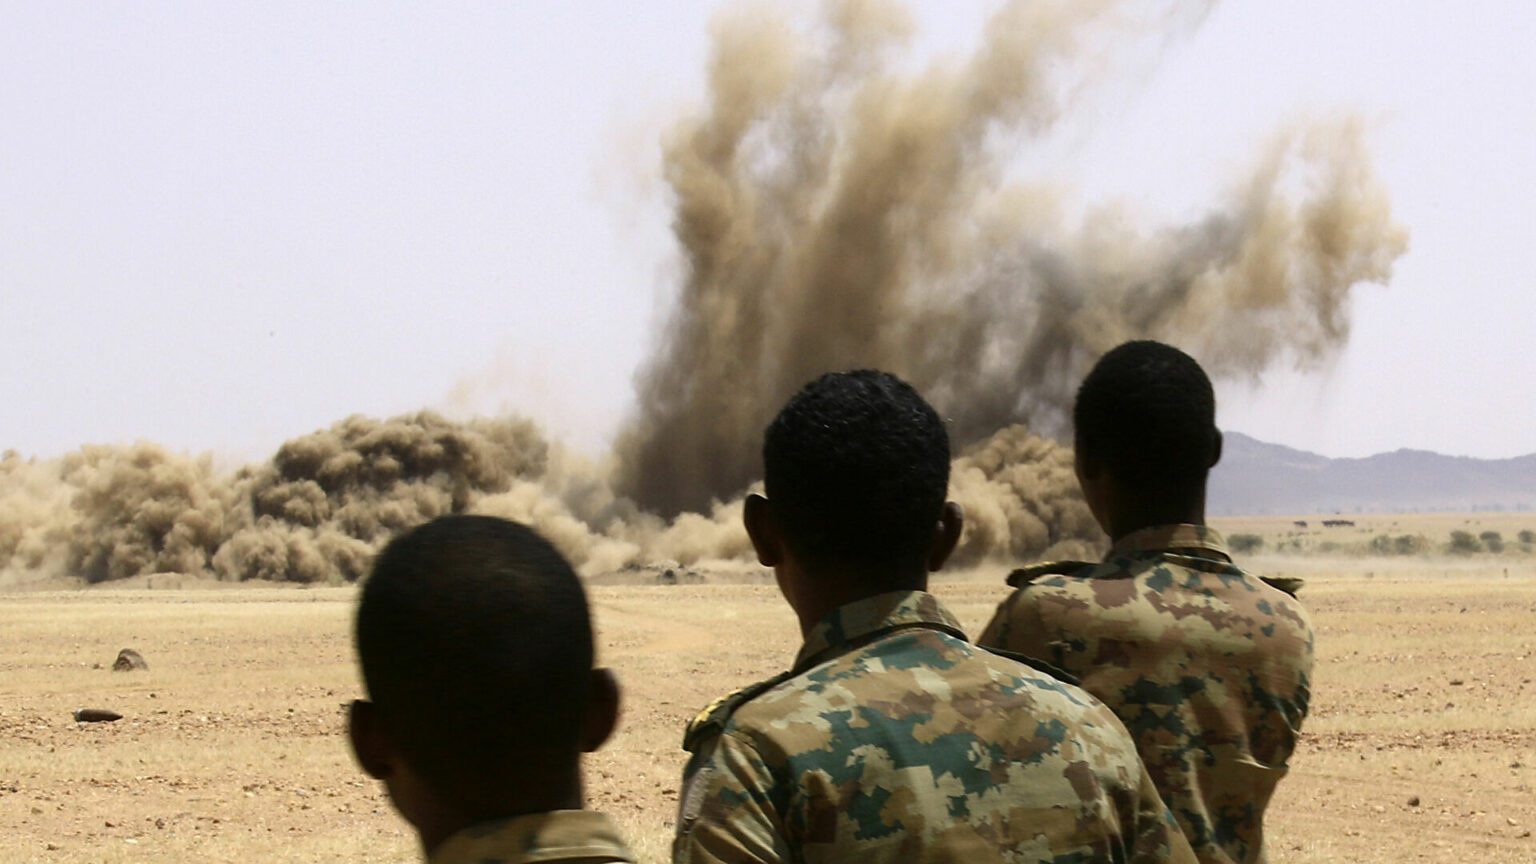 عودة الصراع في دارفور: الأسباب والتداعيات